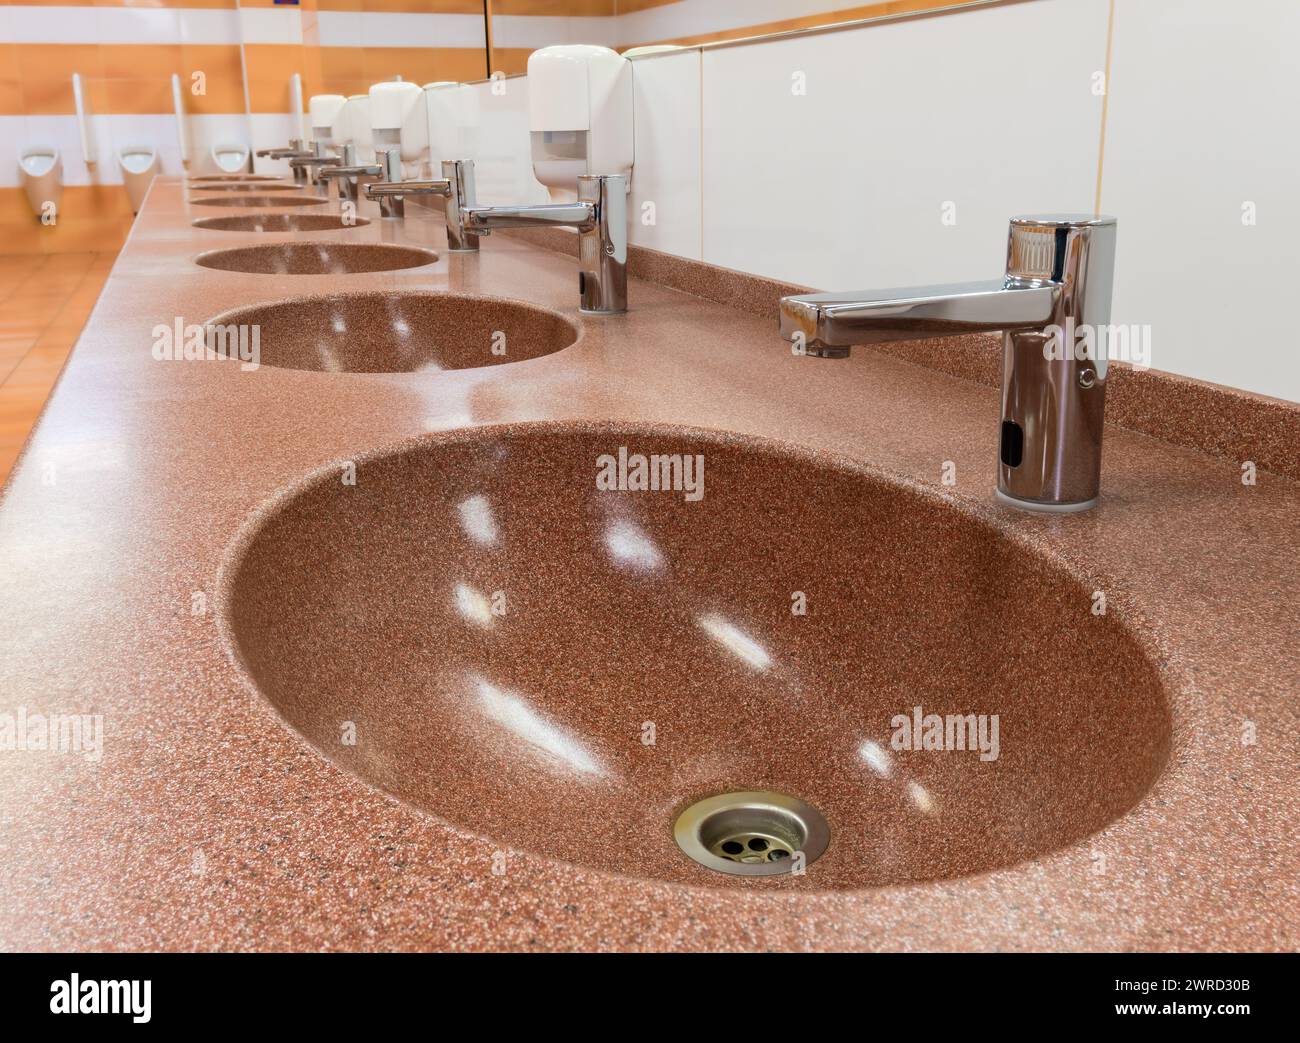 Reihe von Waschtischen mit automatischen Armaturen und Keramikwaschbecken in einer öffentlichen Toilette Stockfoto